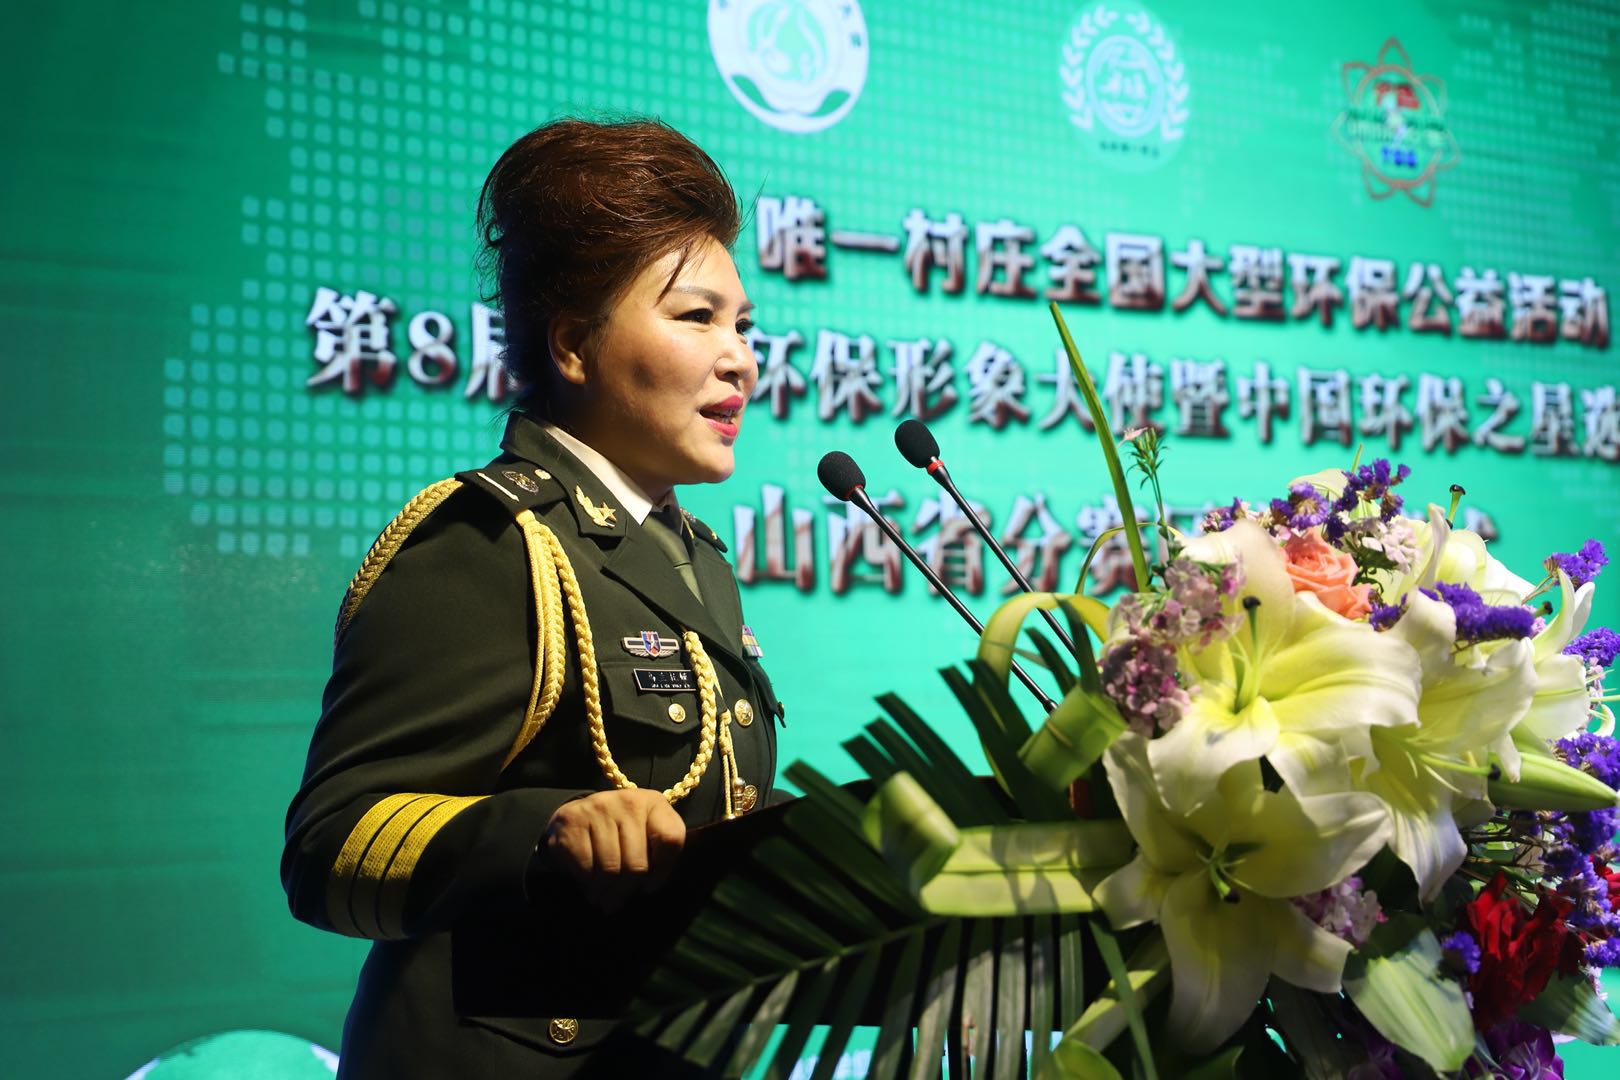 中国环保形象大使、著名军旅歌手乌兰托娅代表文艺界讲话.jpg